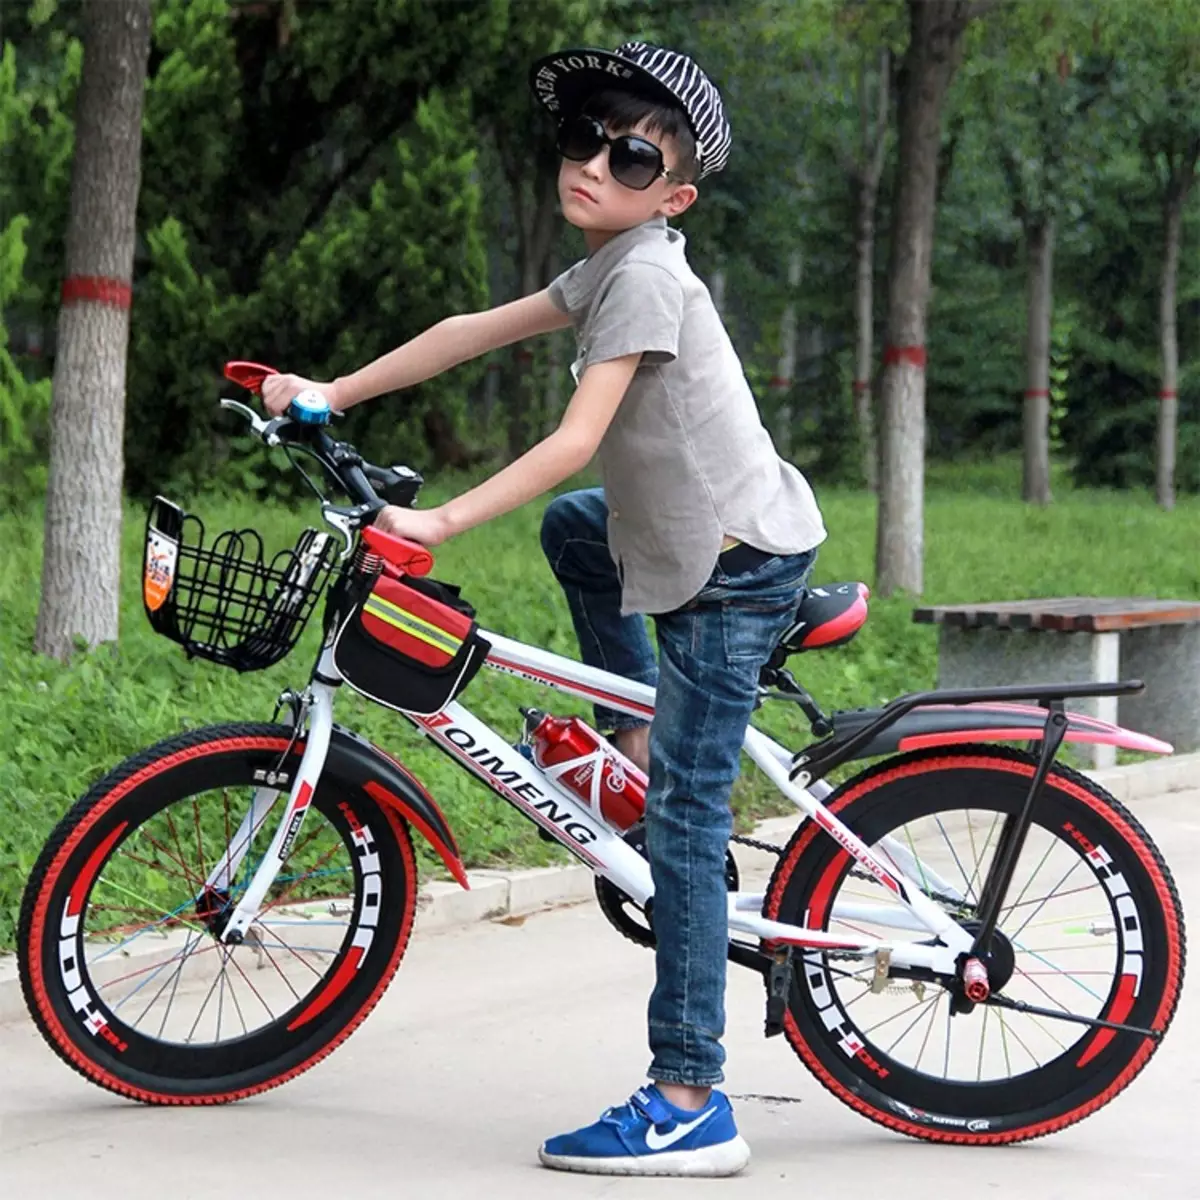 الدراجات الهوائية للأطفال للطفل هي 10 سنة: كيفية اختيار الدراجة لصبي وفتاة في سن المراهقة؟ كيفية اختيار قطر العجلة؟ نماذج التصنيف 8589_16